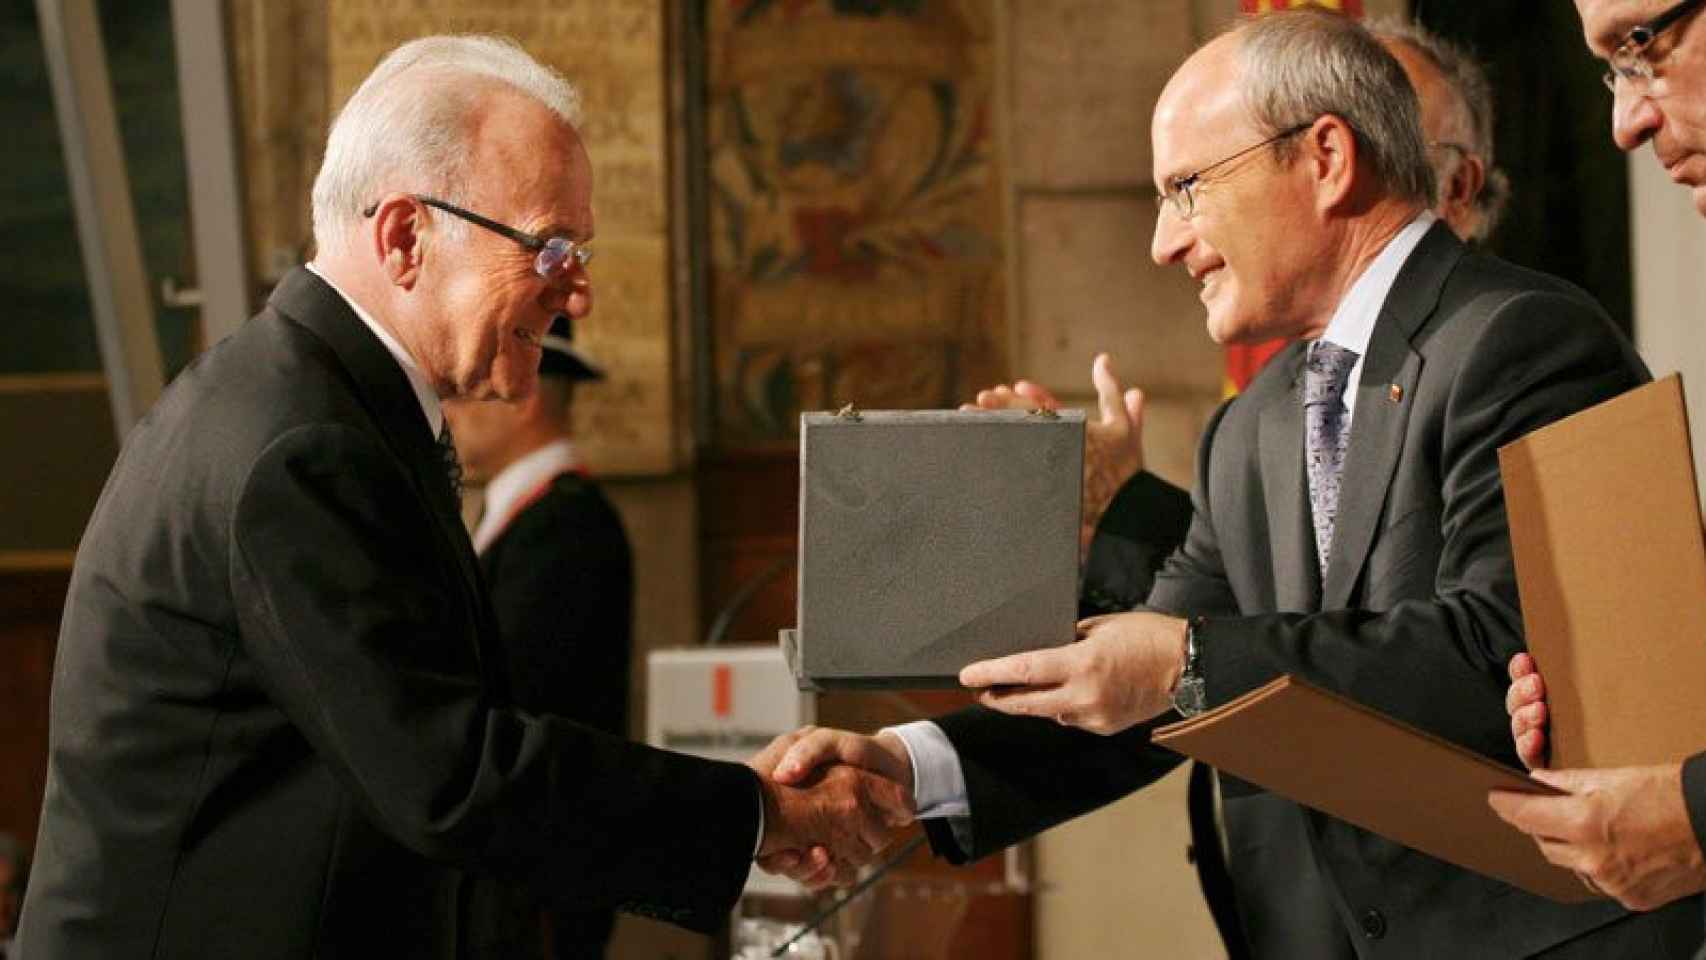 Josep Manuel Corrales, uno de los fundadores de MRW y Corrales empresas deportivas, recibe la Cruz de Sant Jordi de manos del presidente José Montilla en 2009.